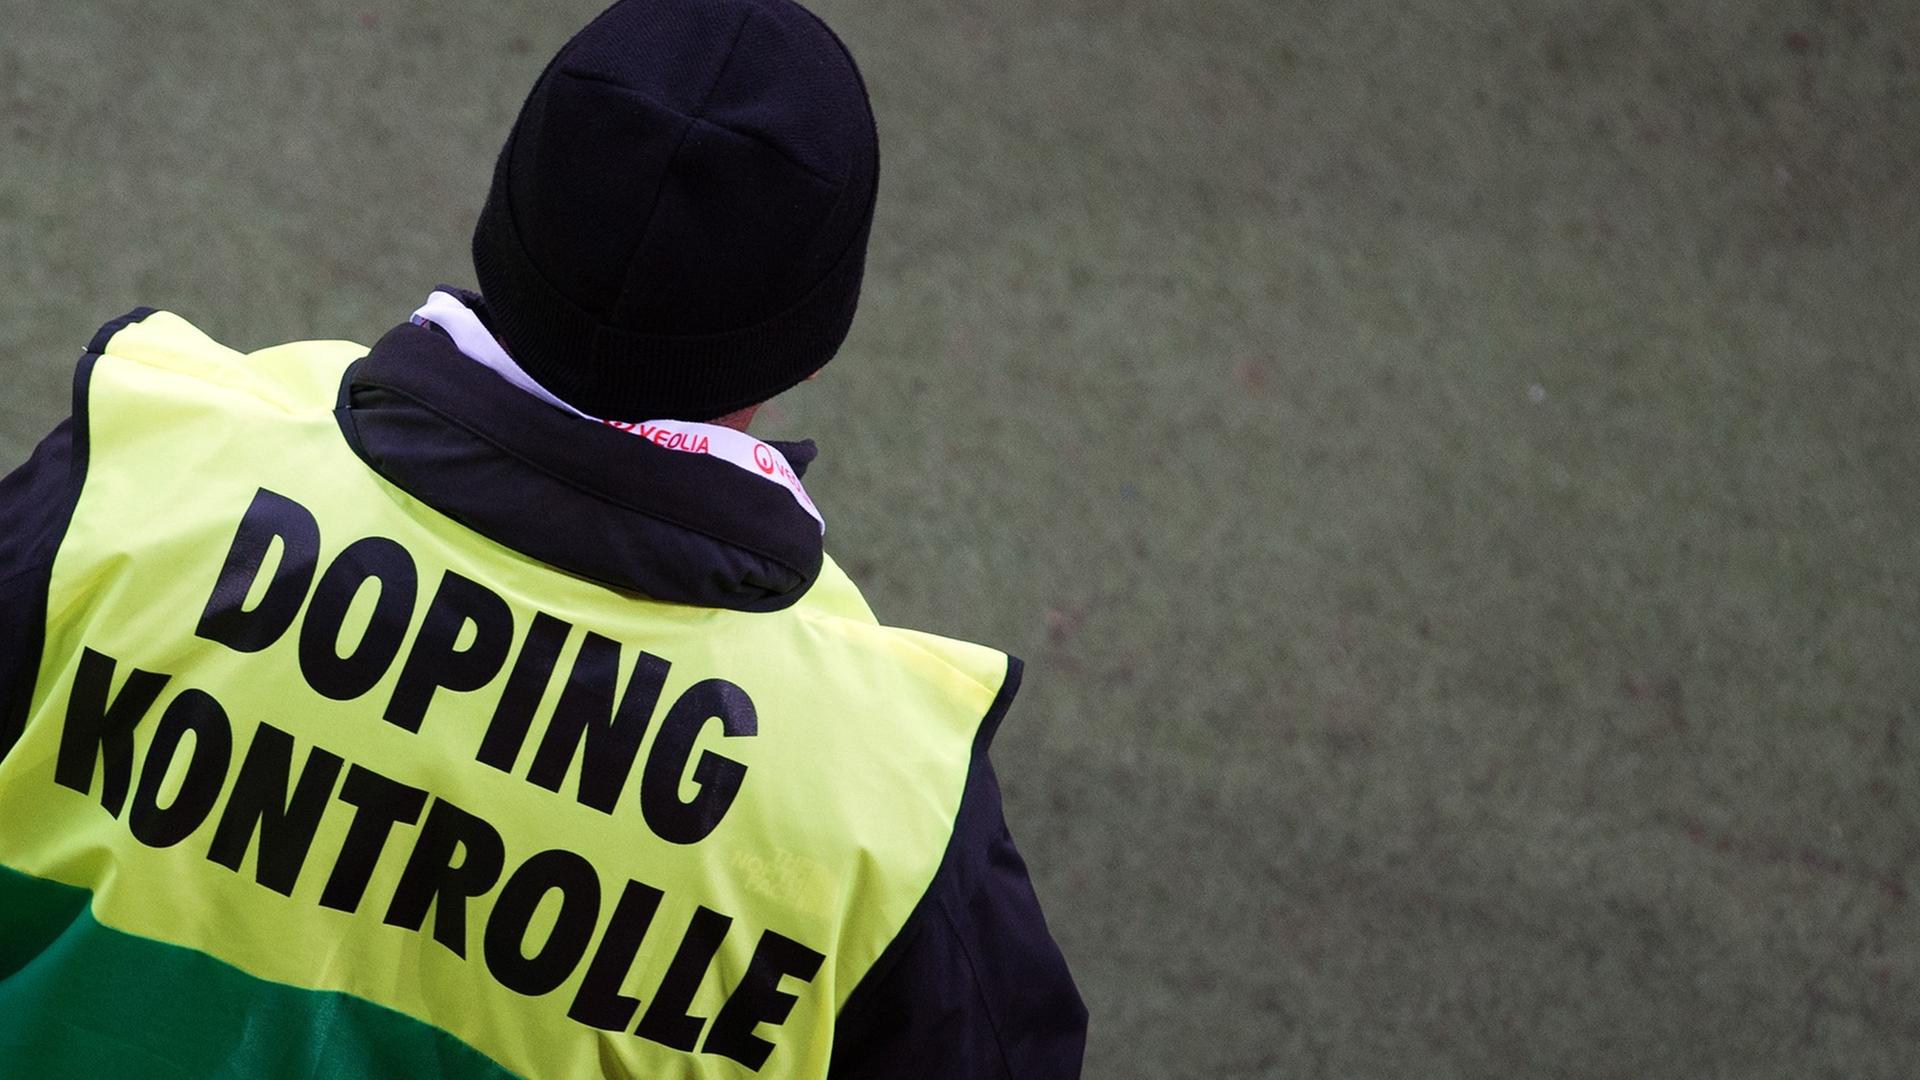 Ein Dopingkontrolleur von hinten mit gelb-grüner Jacke und der Aufschrift "Dopingkontrolle".